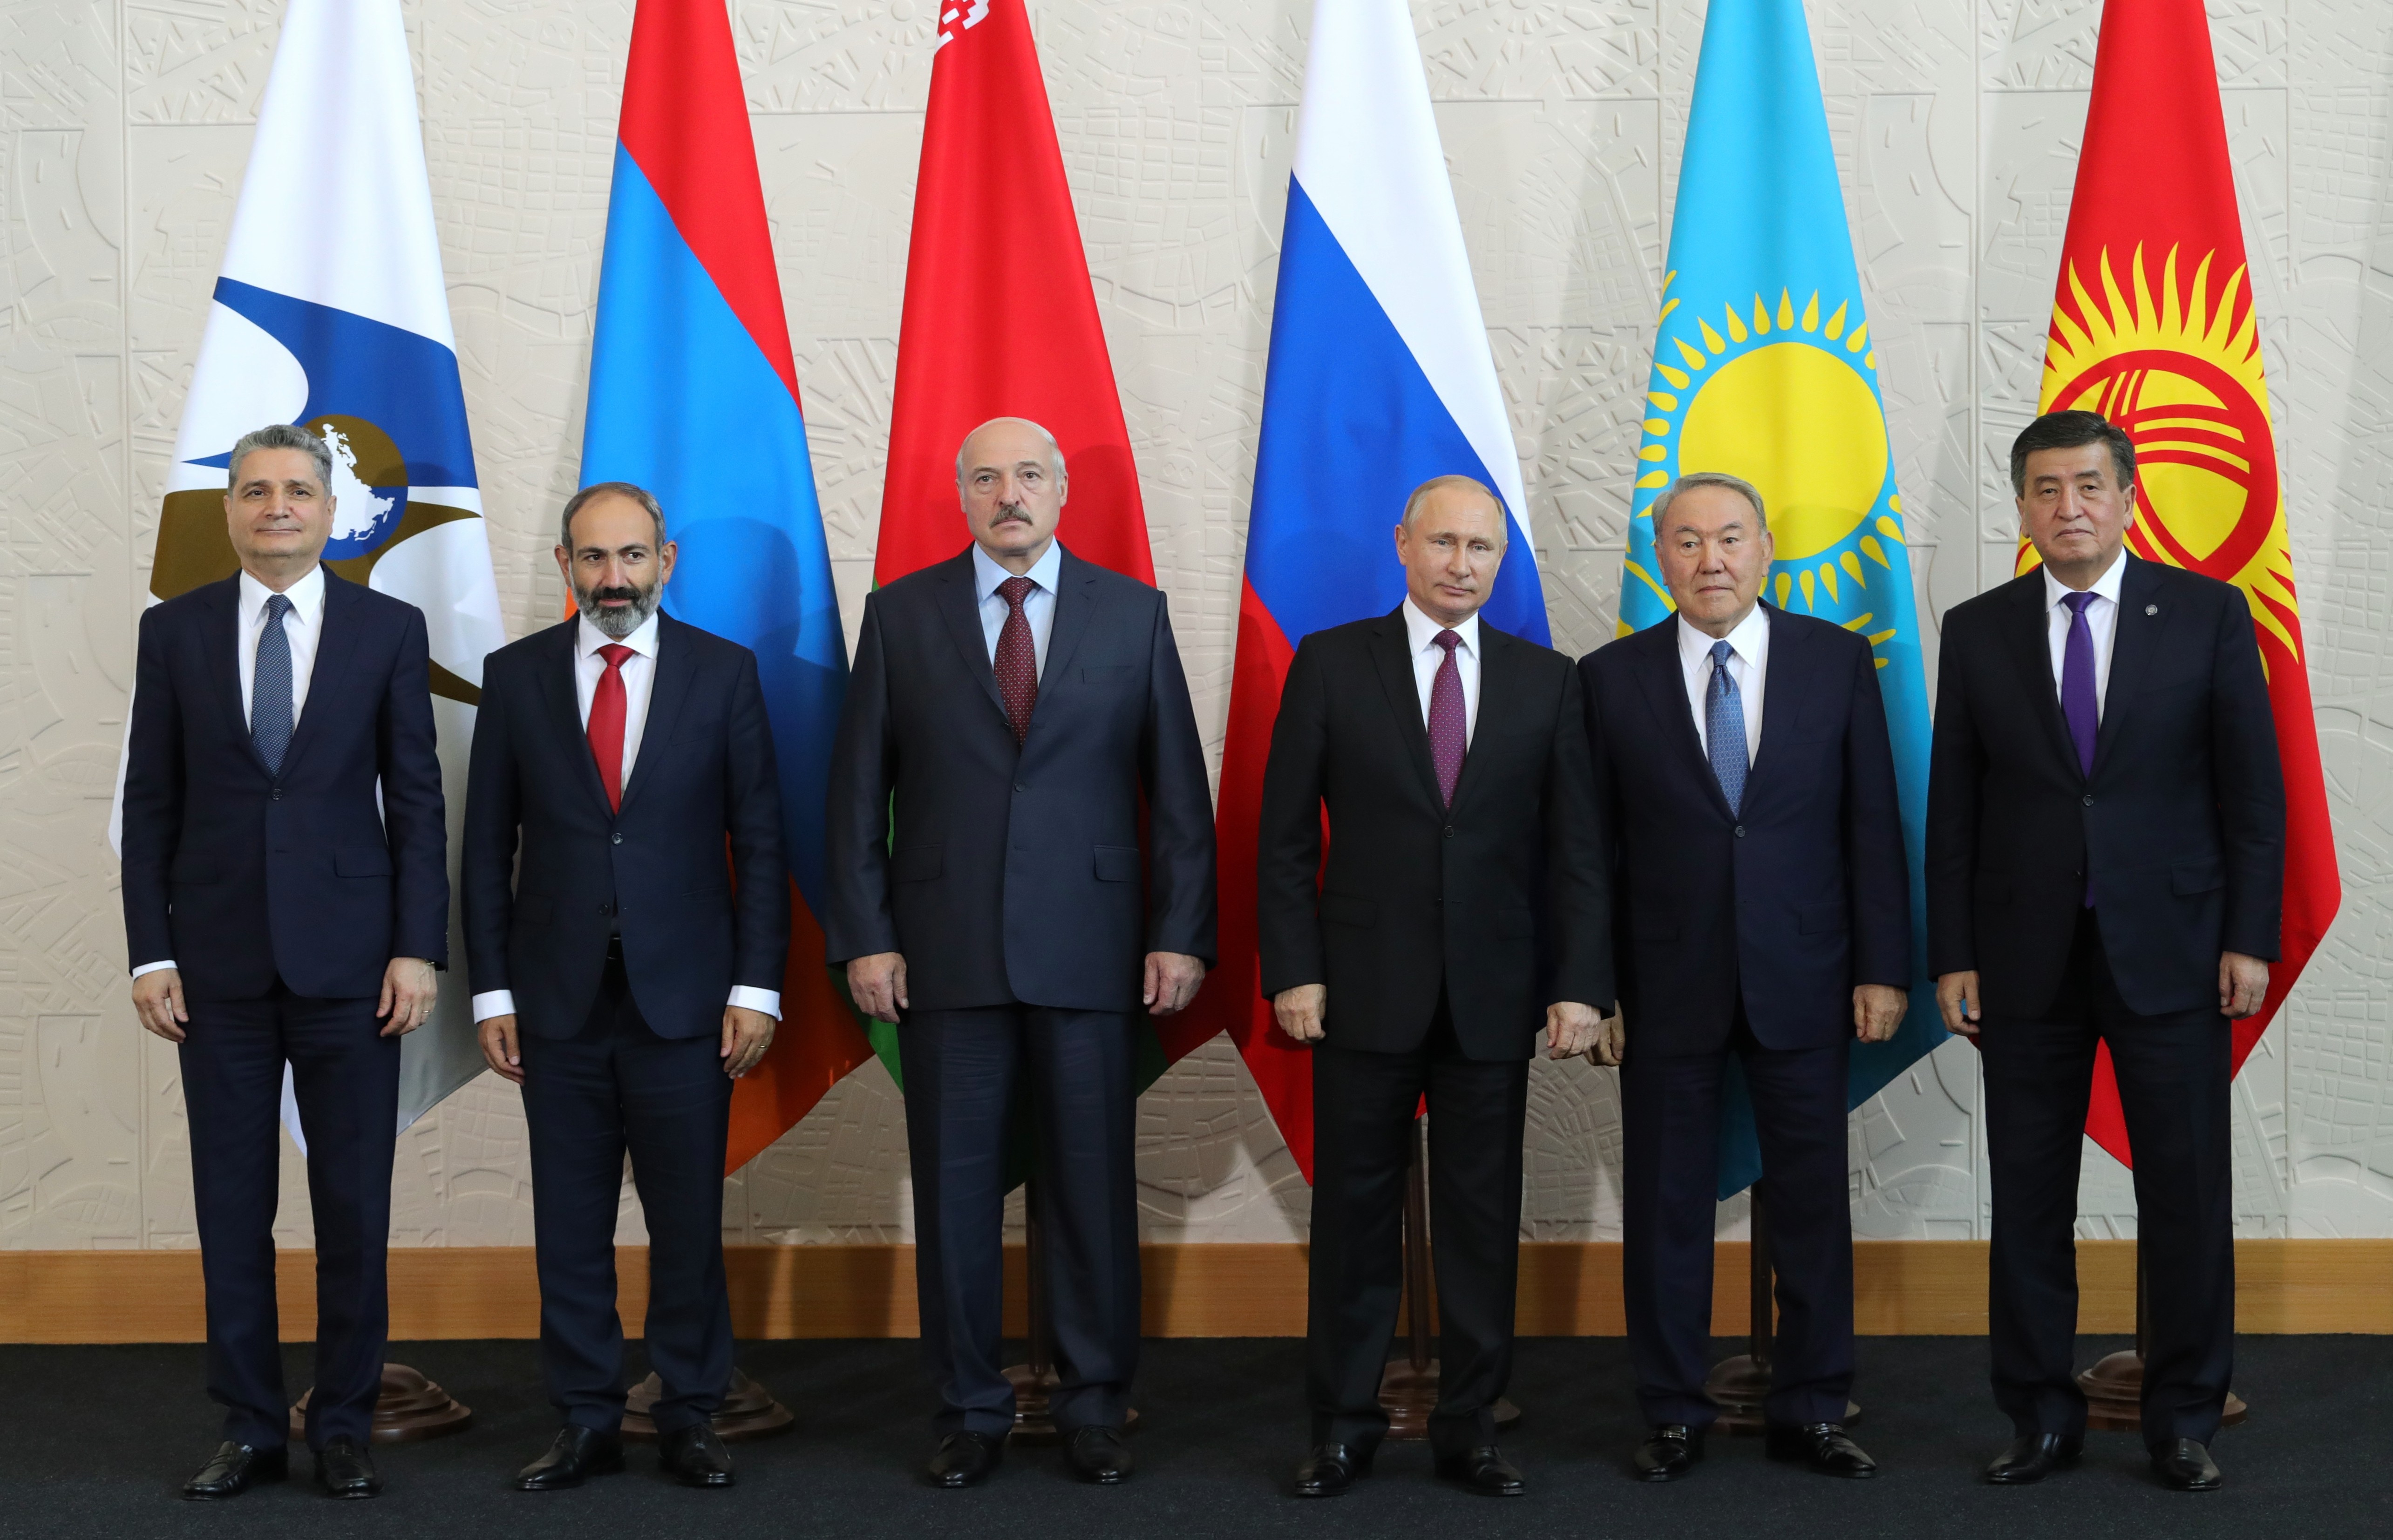 Страны входящие в евразийский экономический союз